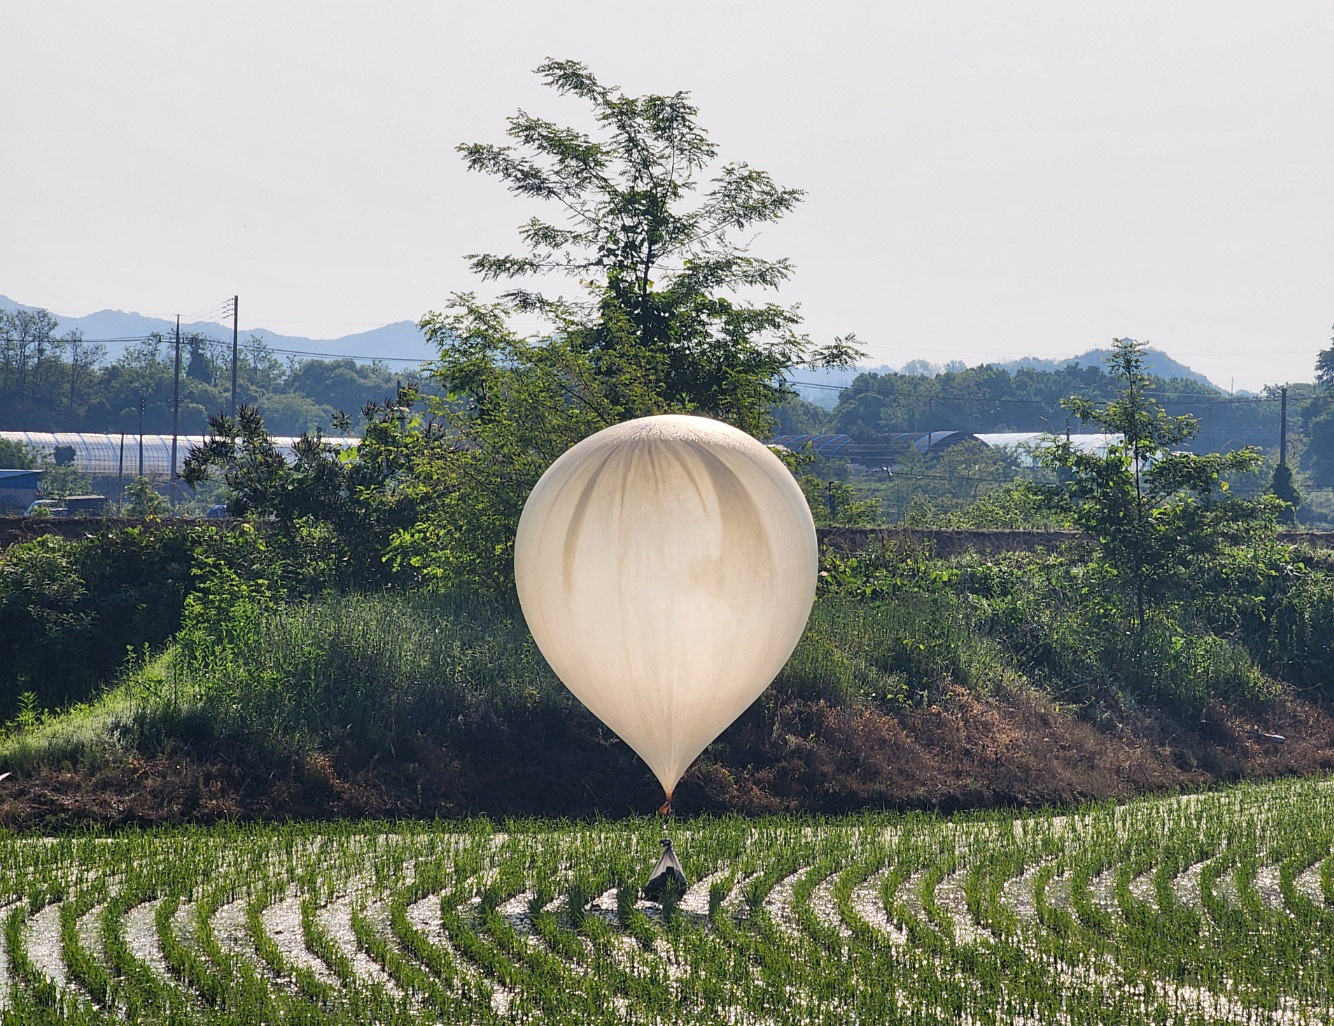 Η Βόρεια Κορέα στέλνει μπαλόνια με σκουπίδια και περιττώματα στη Νότια Κορέα – Ο ορισμός του βρώμικου πολέμου